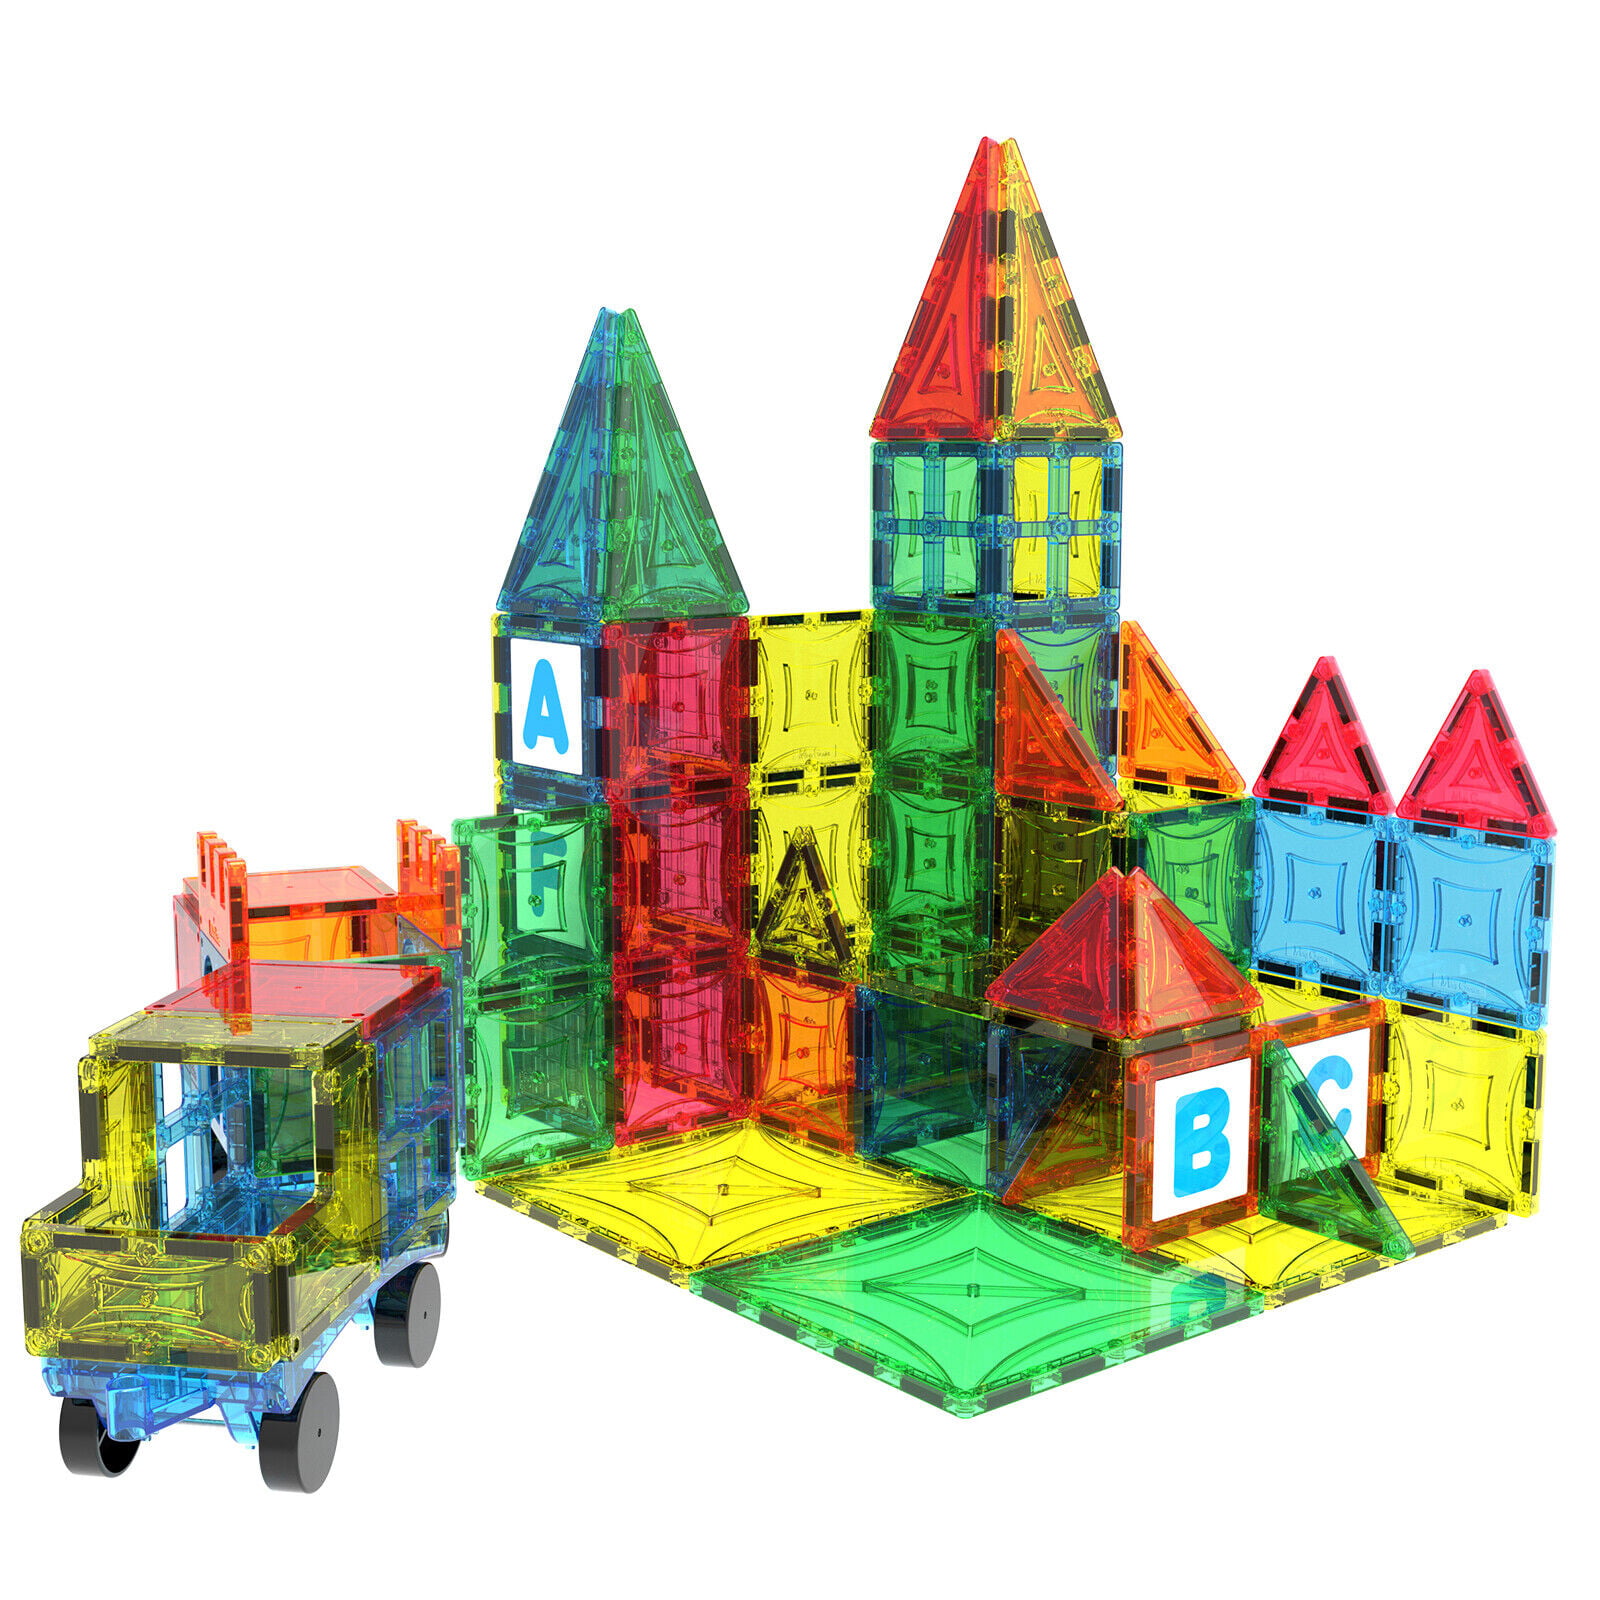 Magnescape Magnetic building blocks & tiles - 132 Piece.